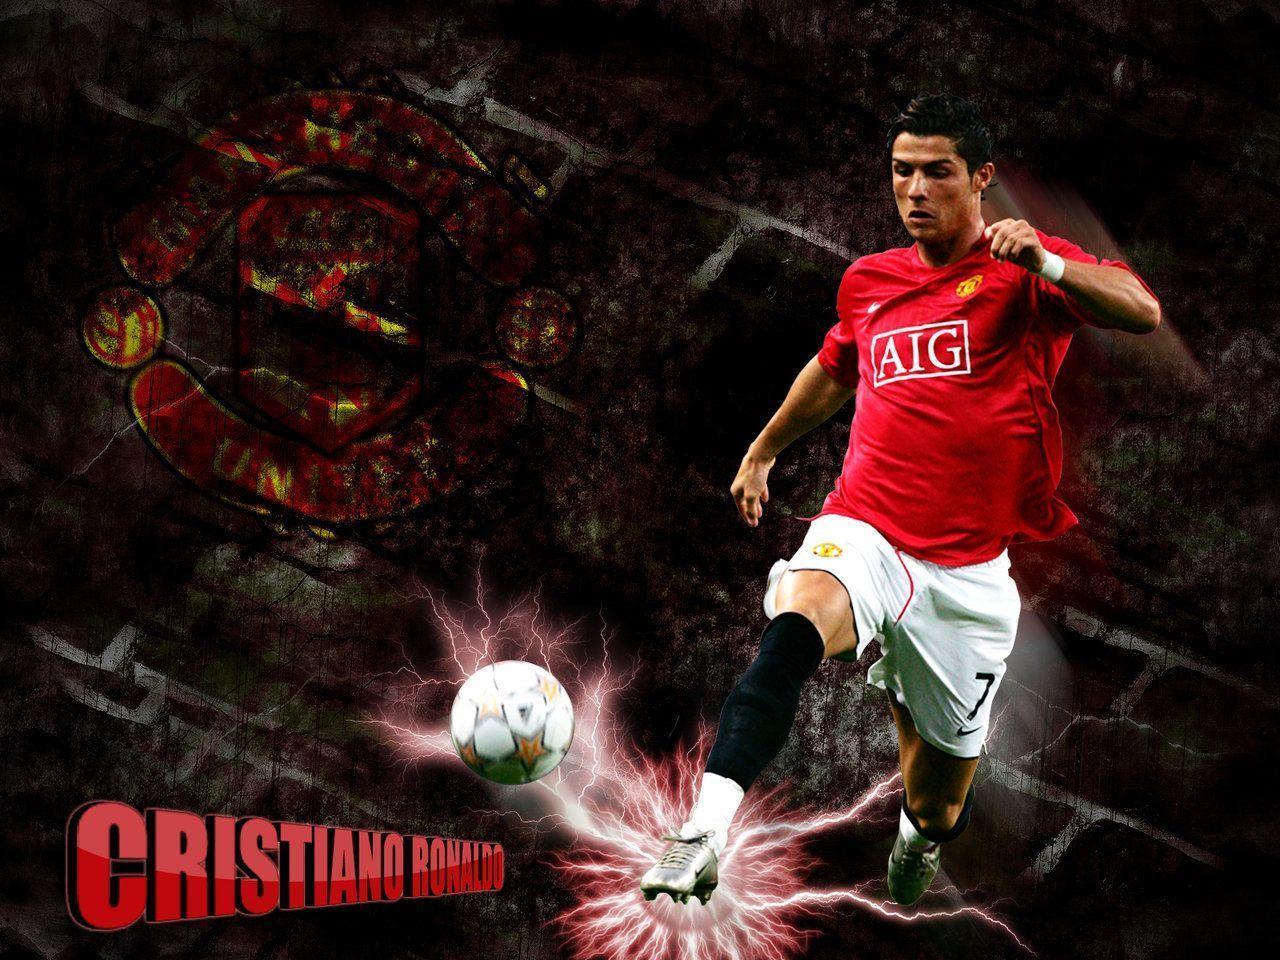 Cristiano Ronaldo Wallpaper Picture. High Definition Wallpaper